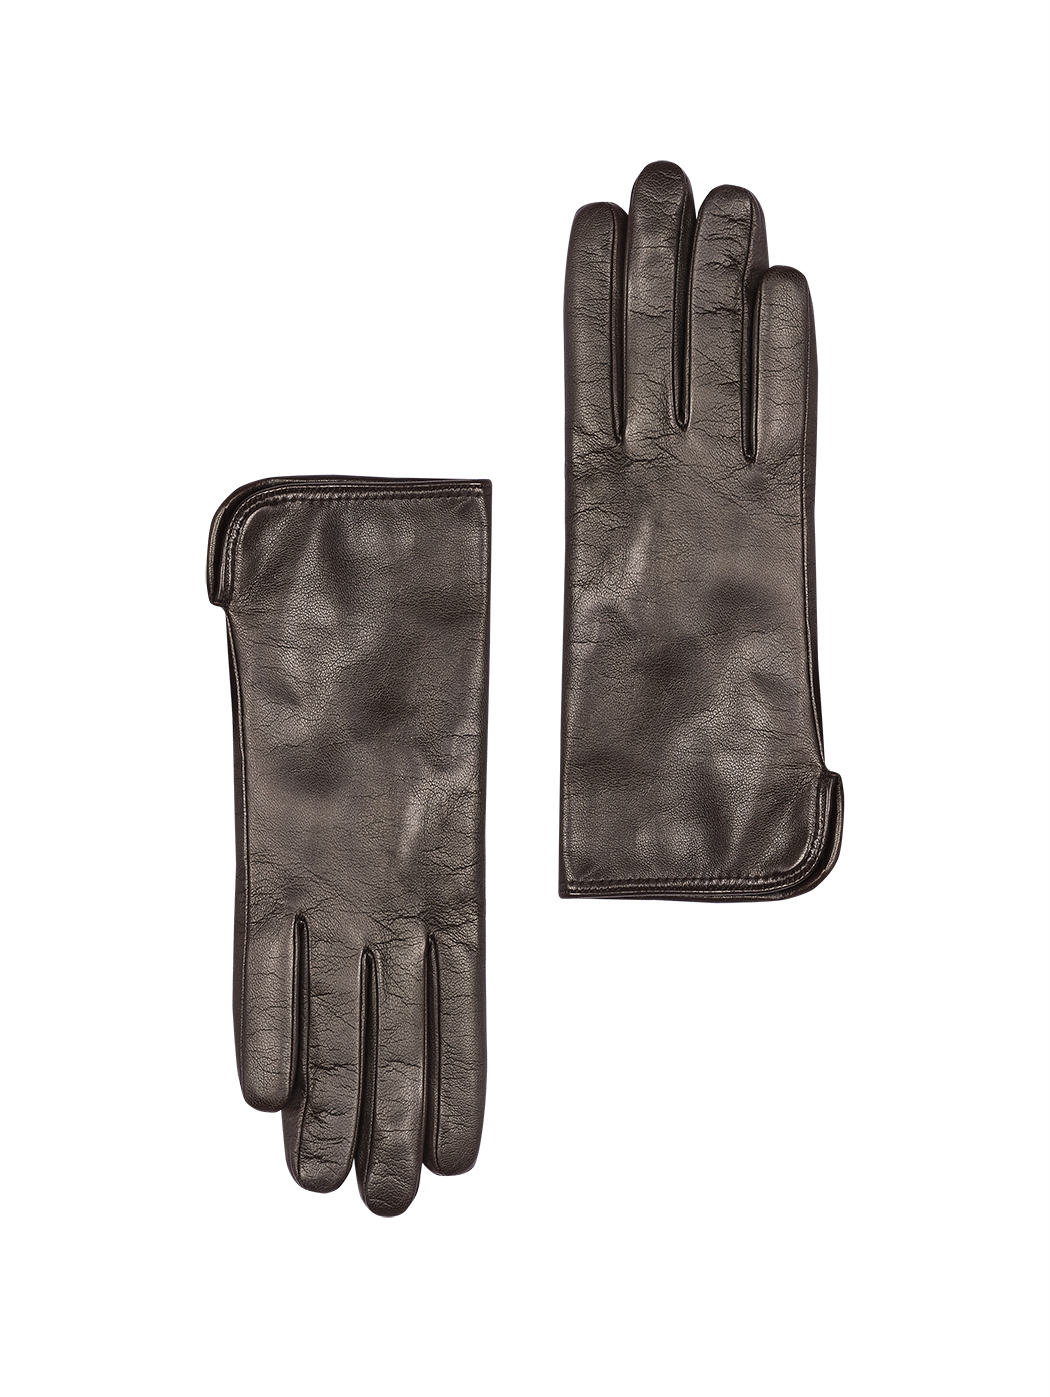 Женские кожаные перчатки  с кашемировым подкладом темно - коричневого цвета